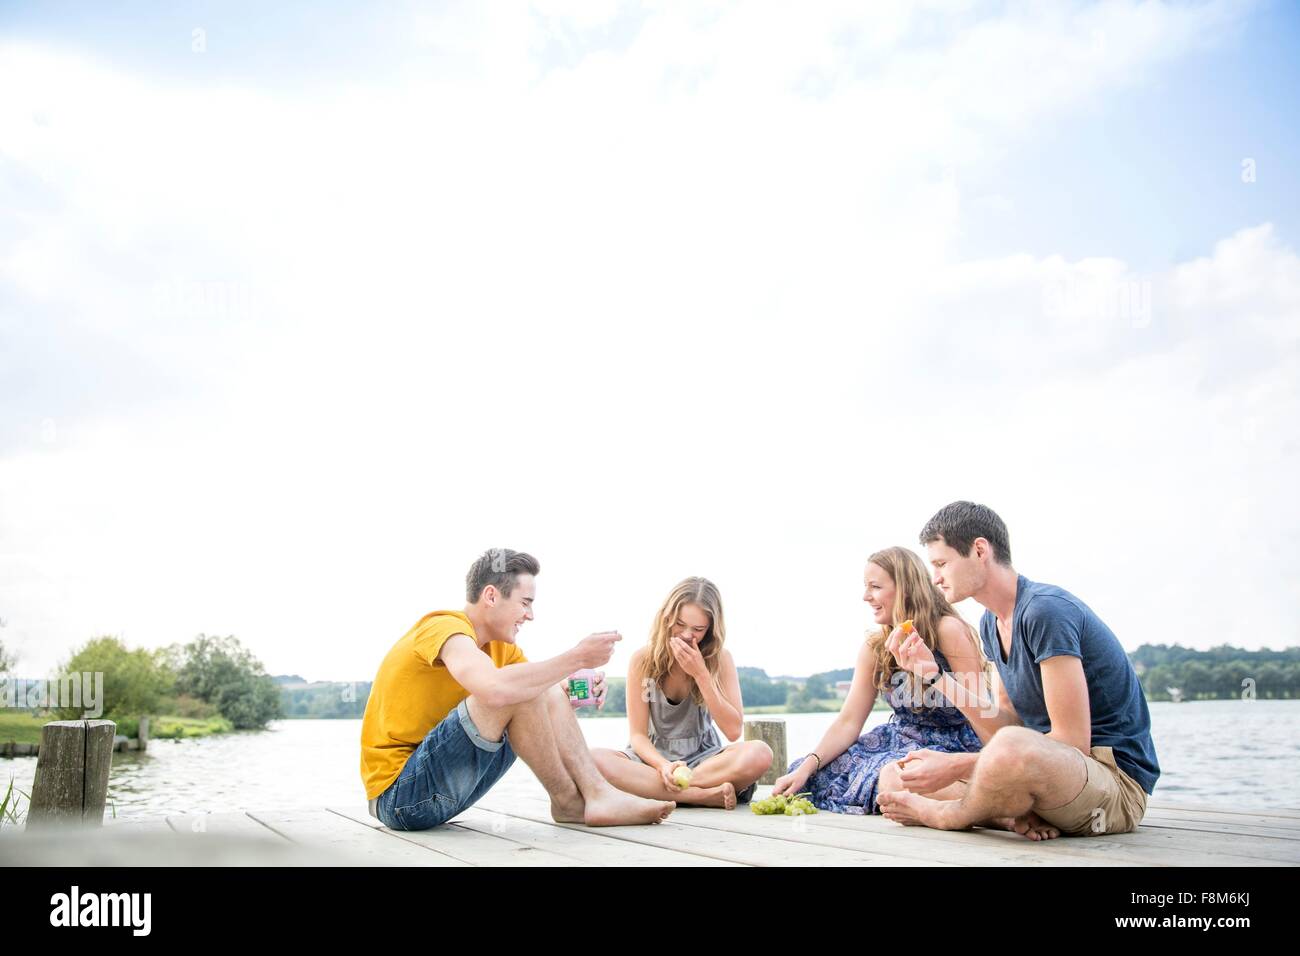 Grupo de jóvenes adultos sentados en jetty, relajante Foto de stock